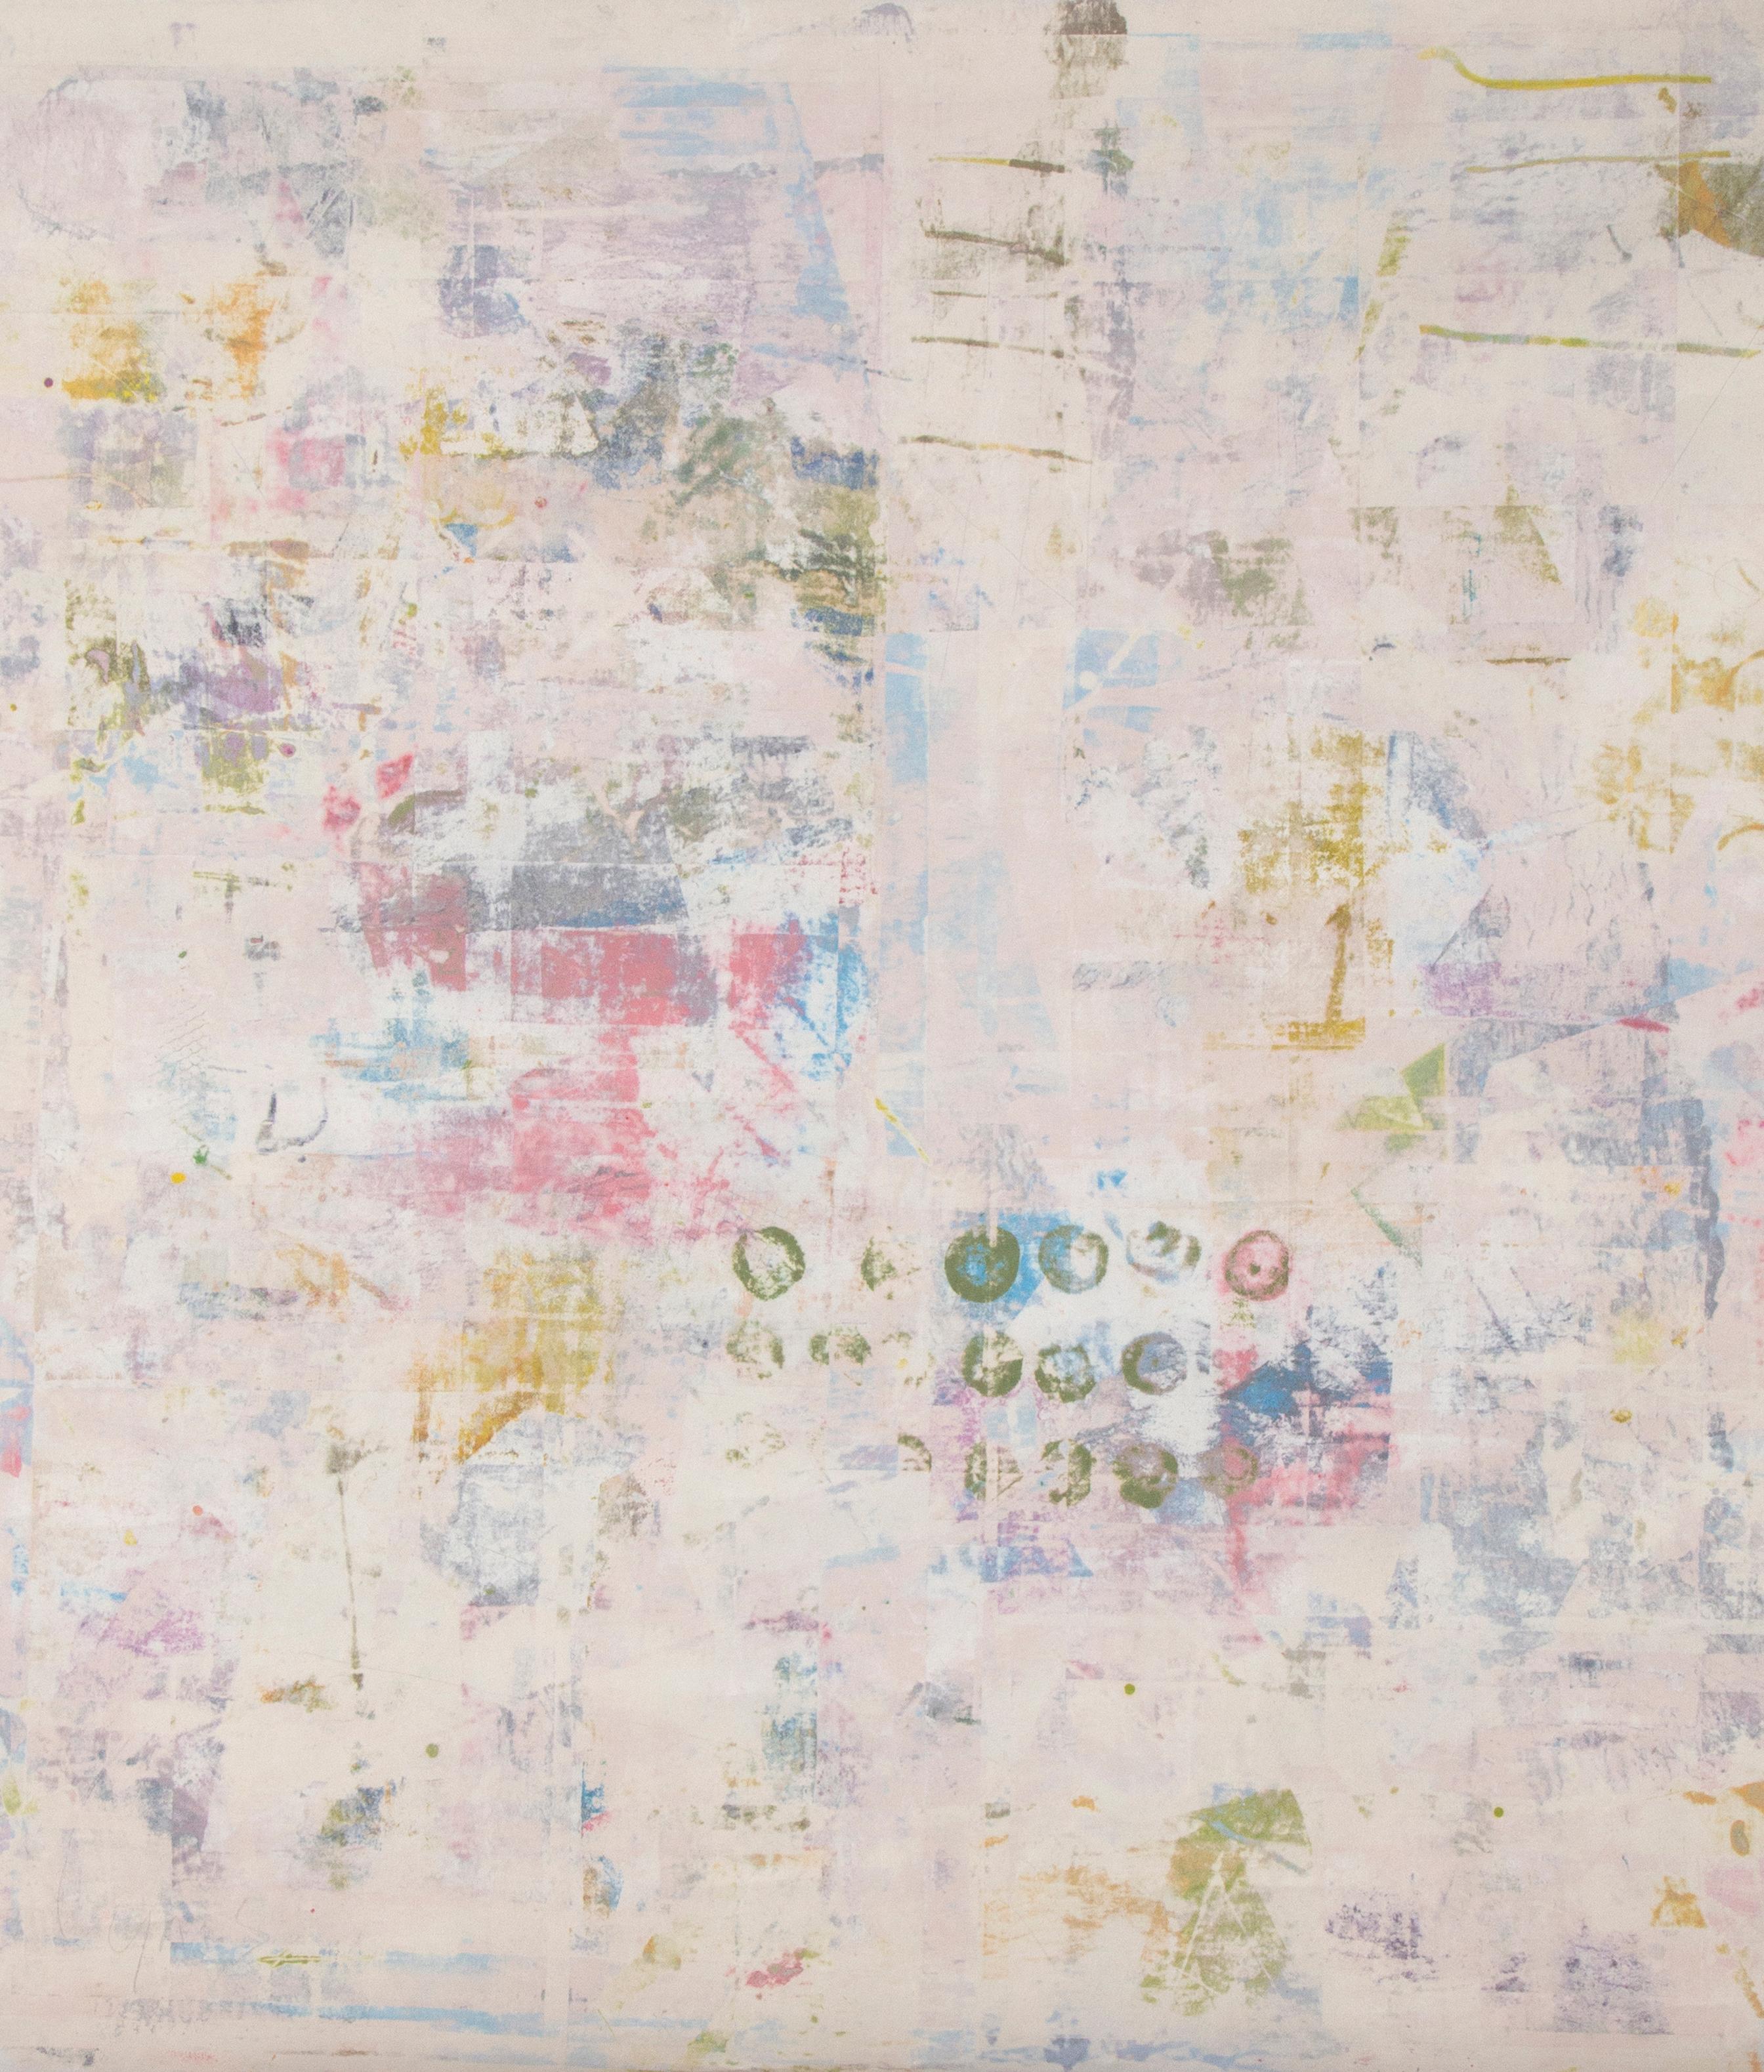 Ein großer, einzigartiger Druck auf Leinwand des amerikanischen Künstlers Mitch Lyons (1938-2018), signiert unten rechts.  Die Leinwand ist nicht aufgespannt und wird aufgerollt in einem Schlauch verschickt. 
Mitch Lyons erwarb seinen Master of Fine